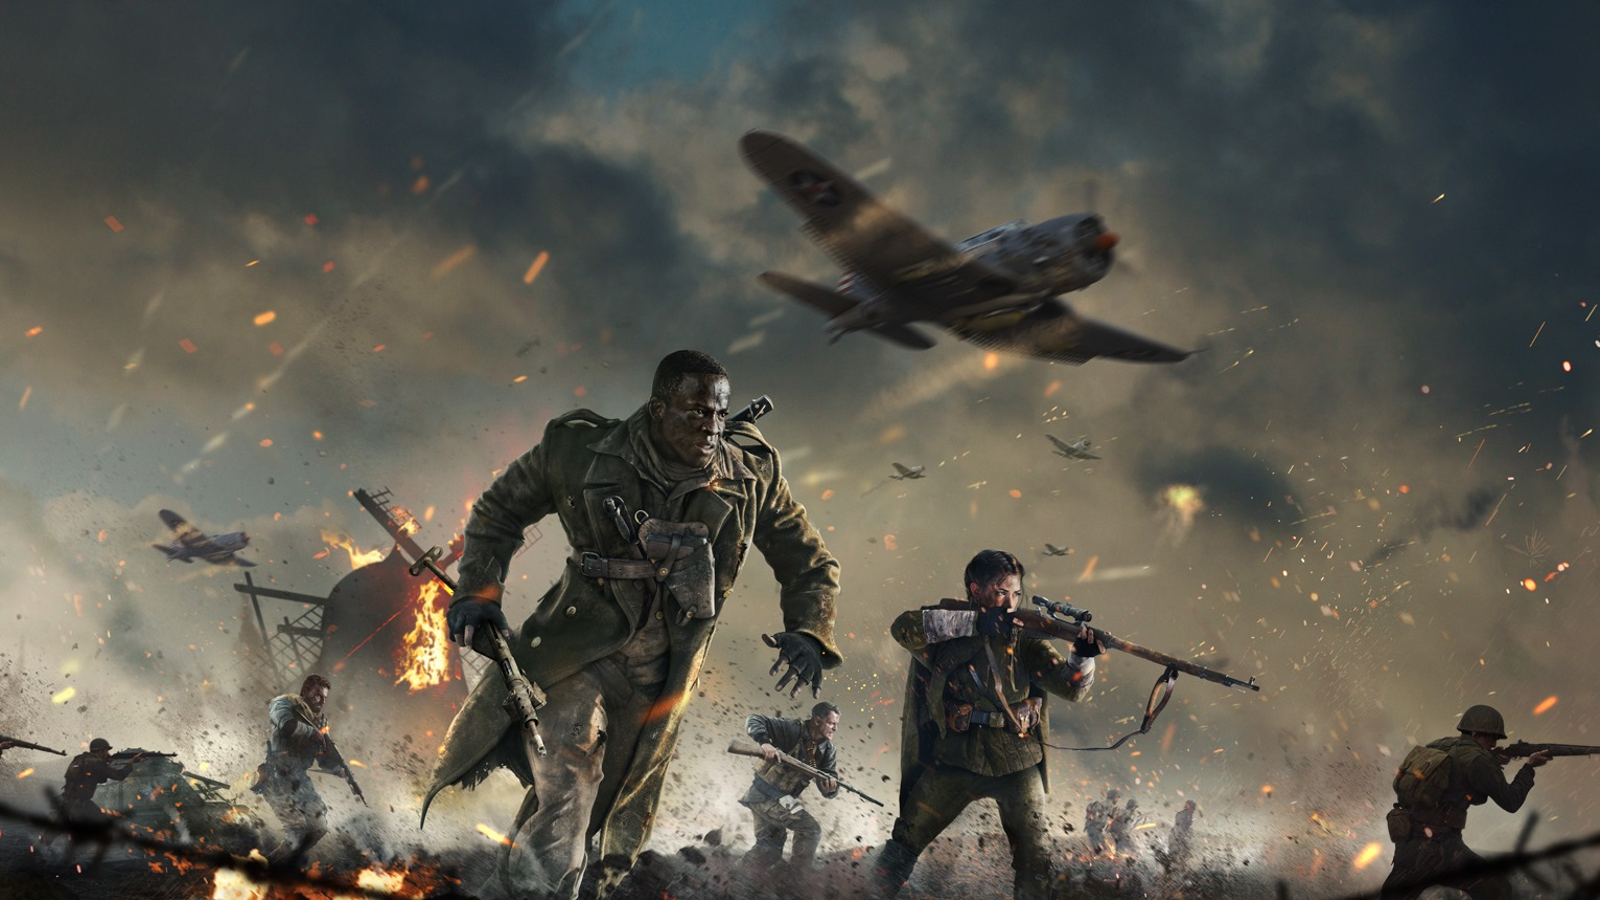 Versão para PC de Call of Duty: Vanguard ganha trailer e pré